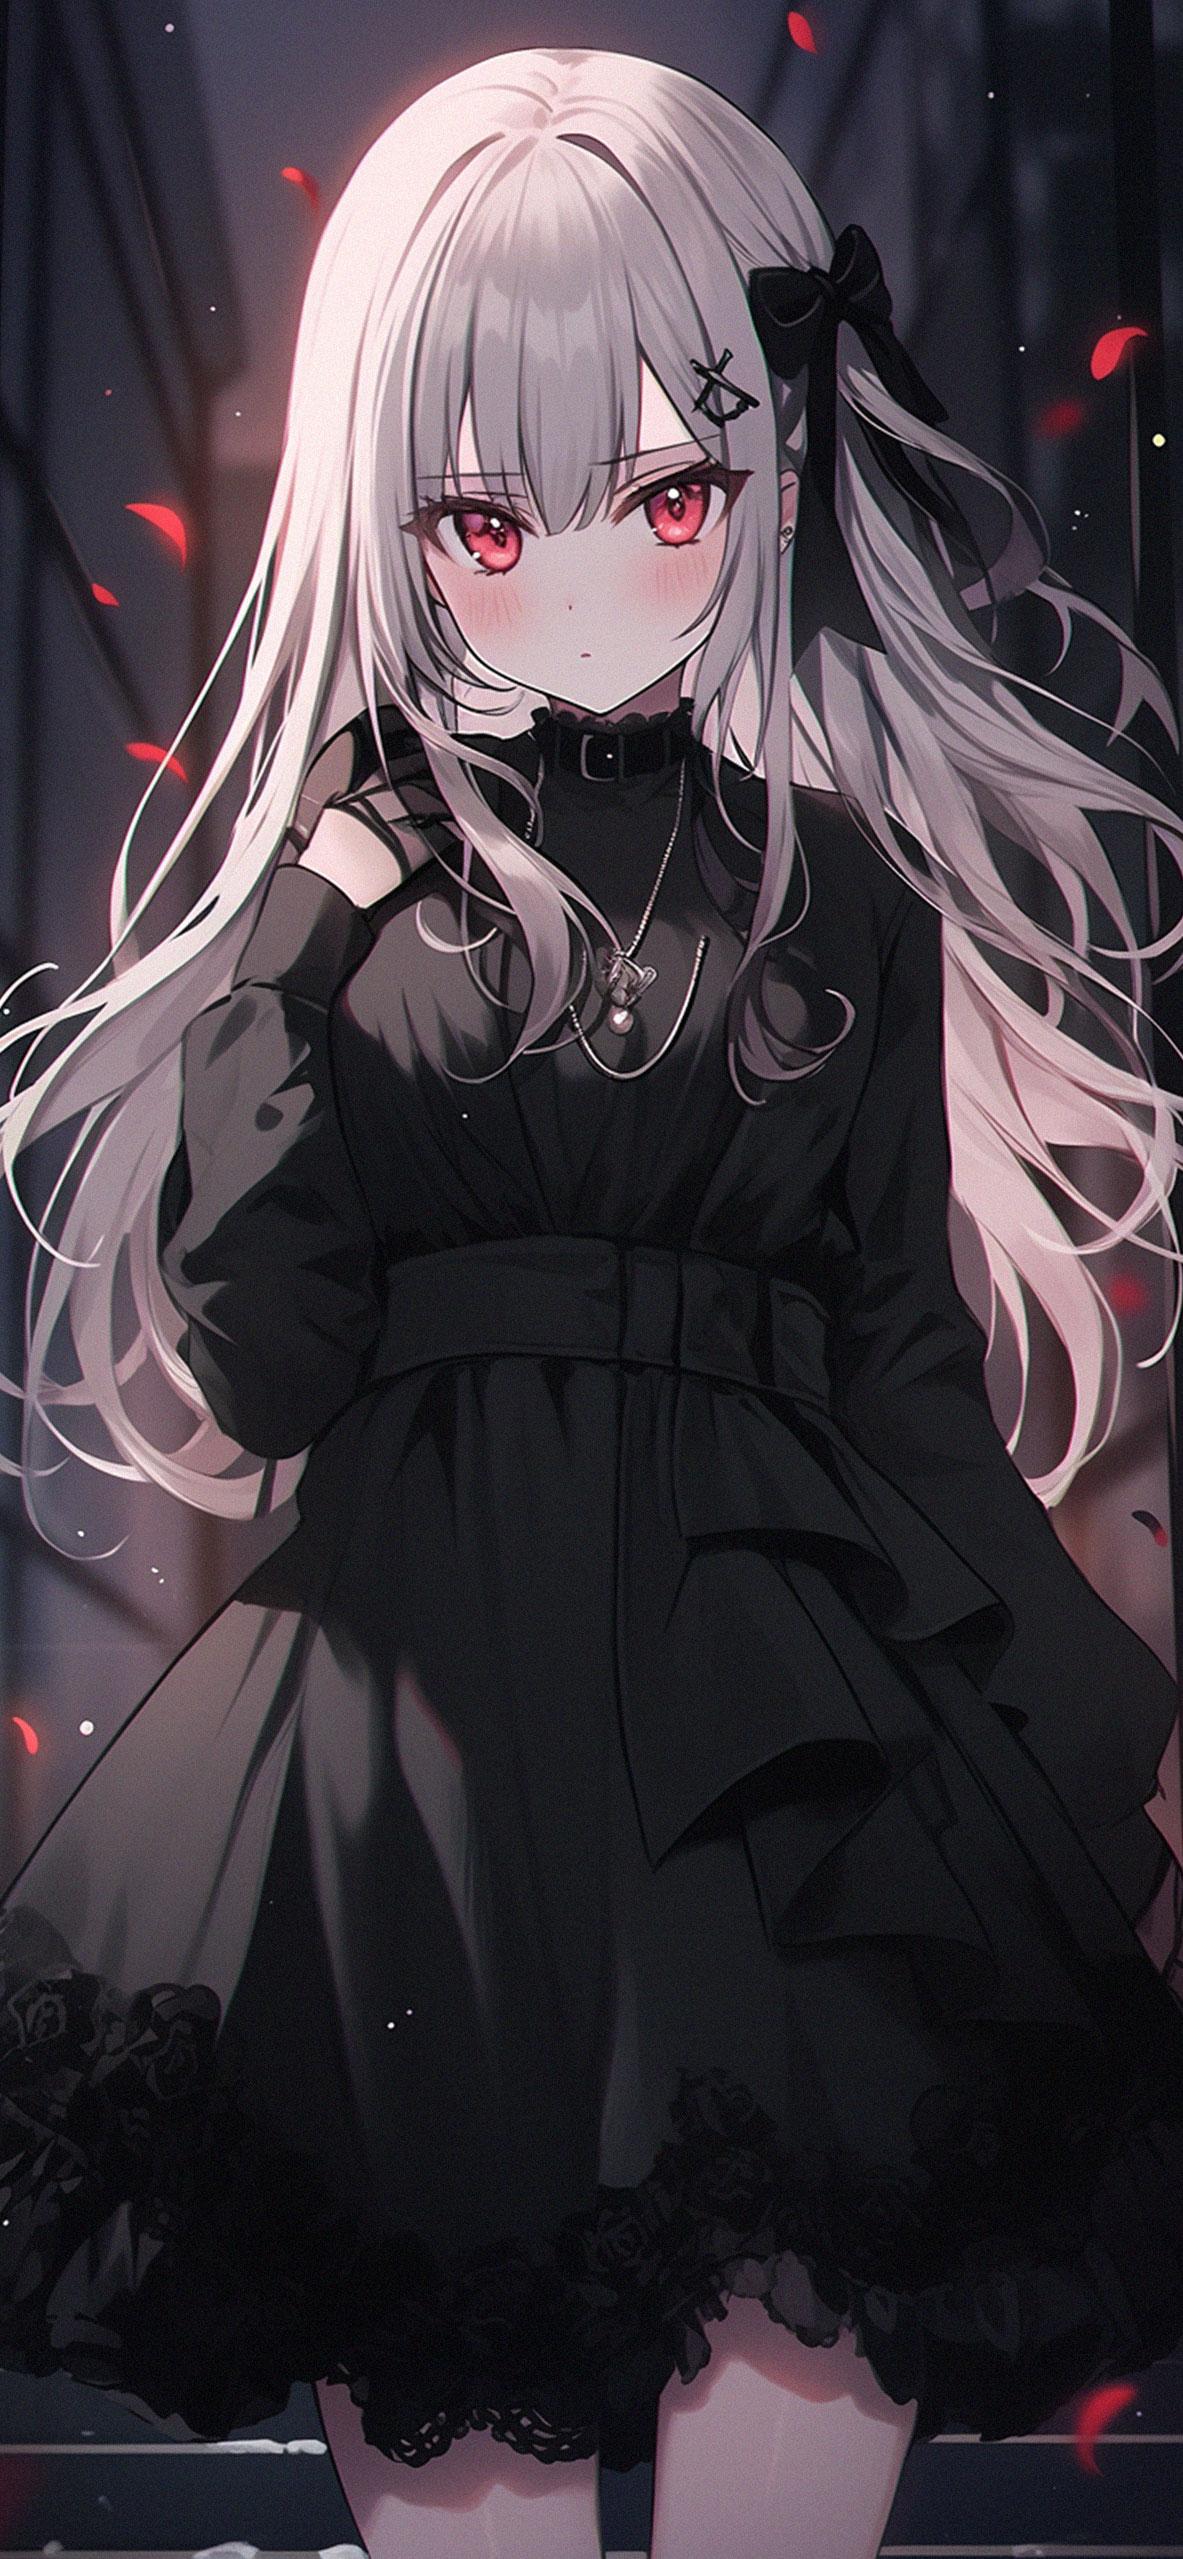 Cute Anime Girl In Black Dress Wallpaper